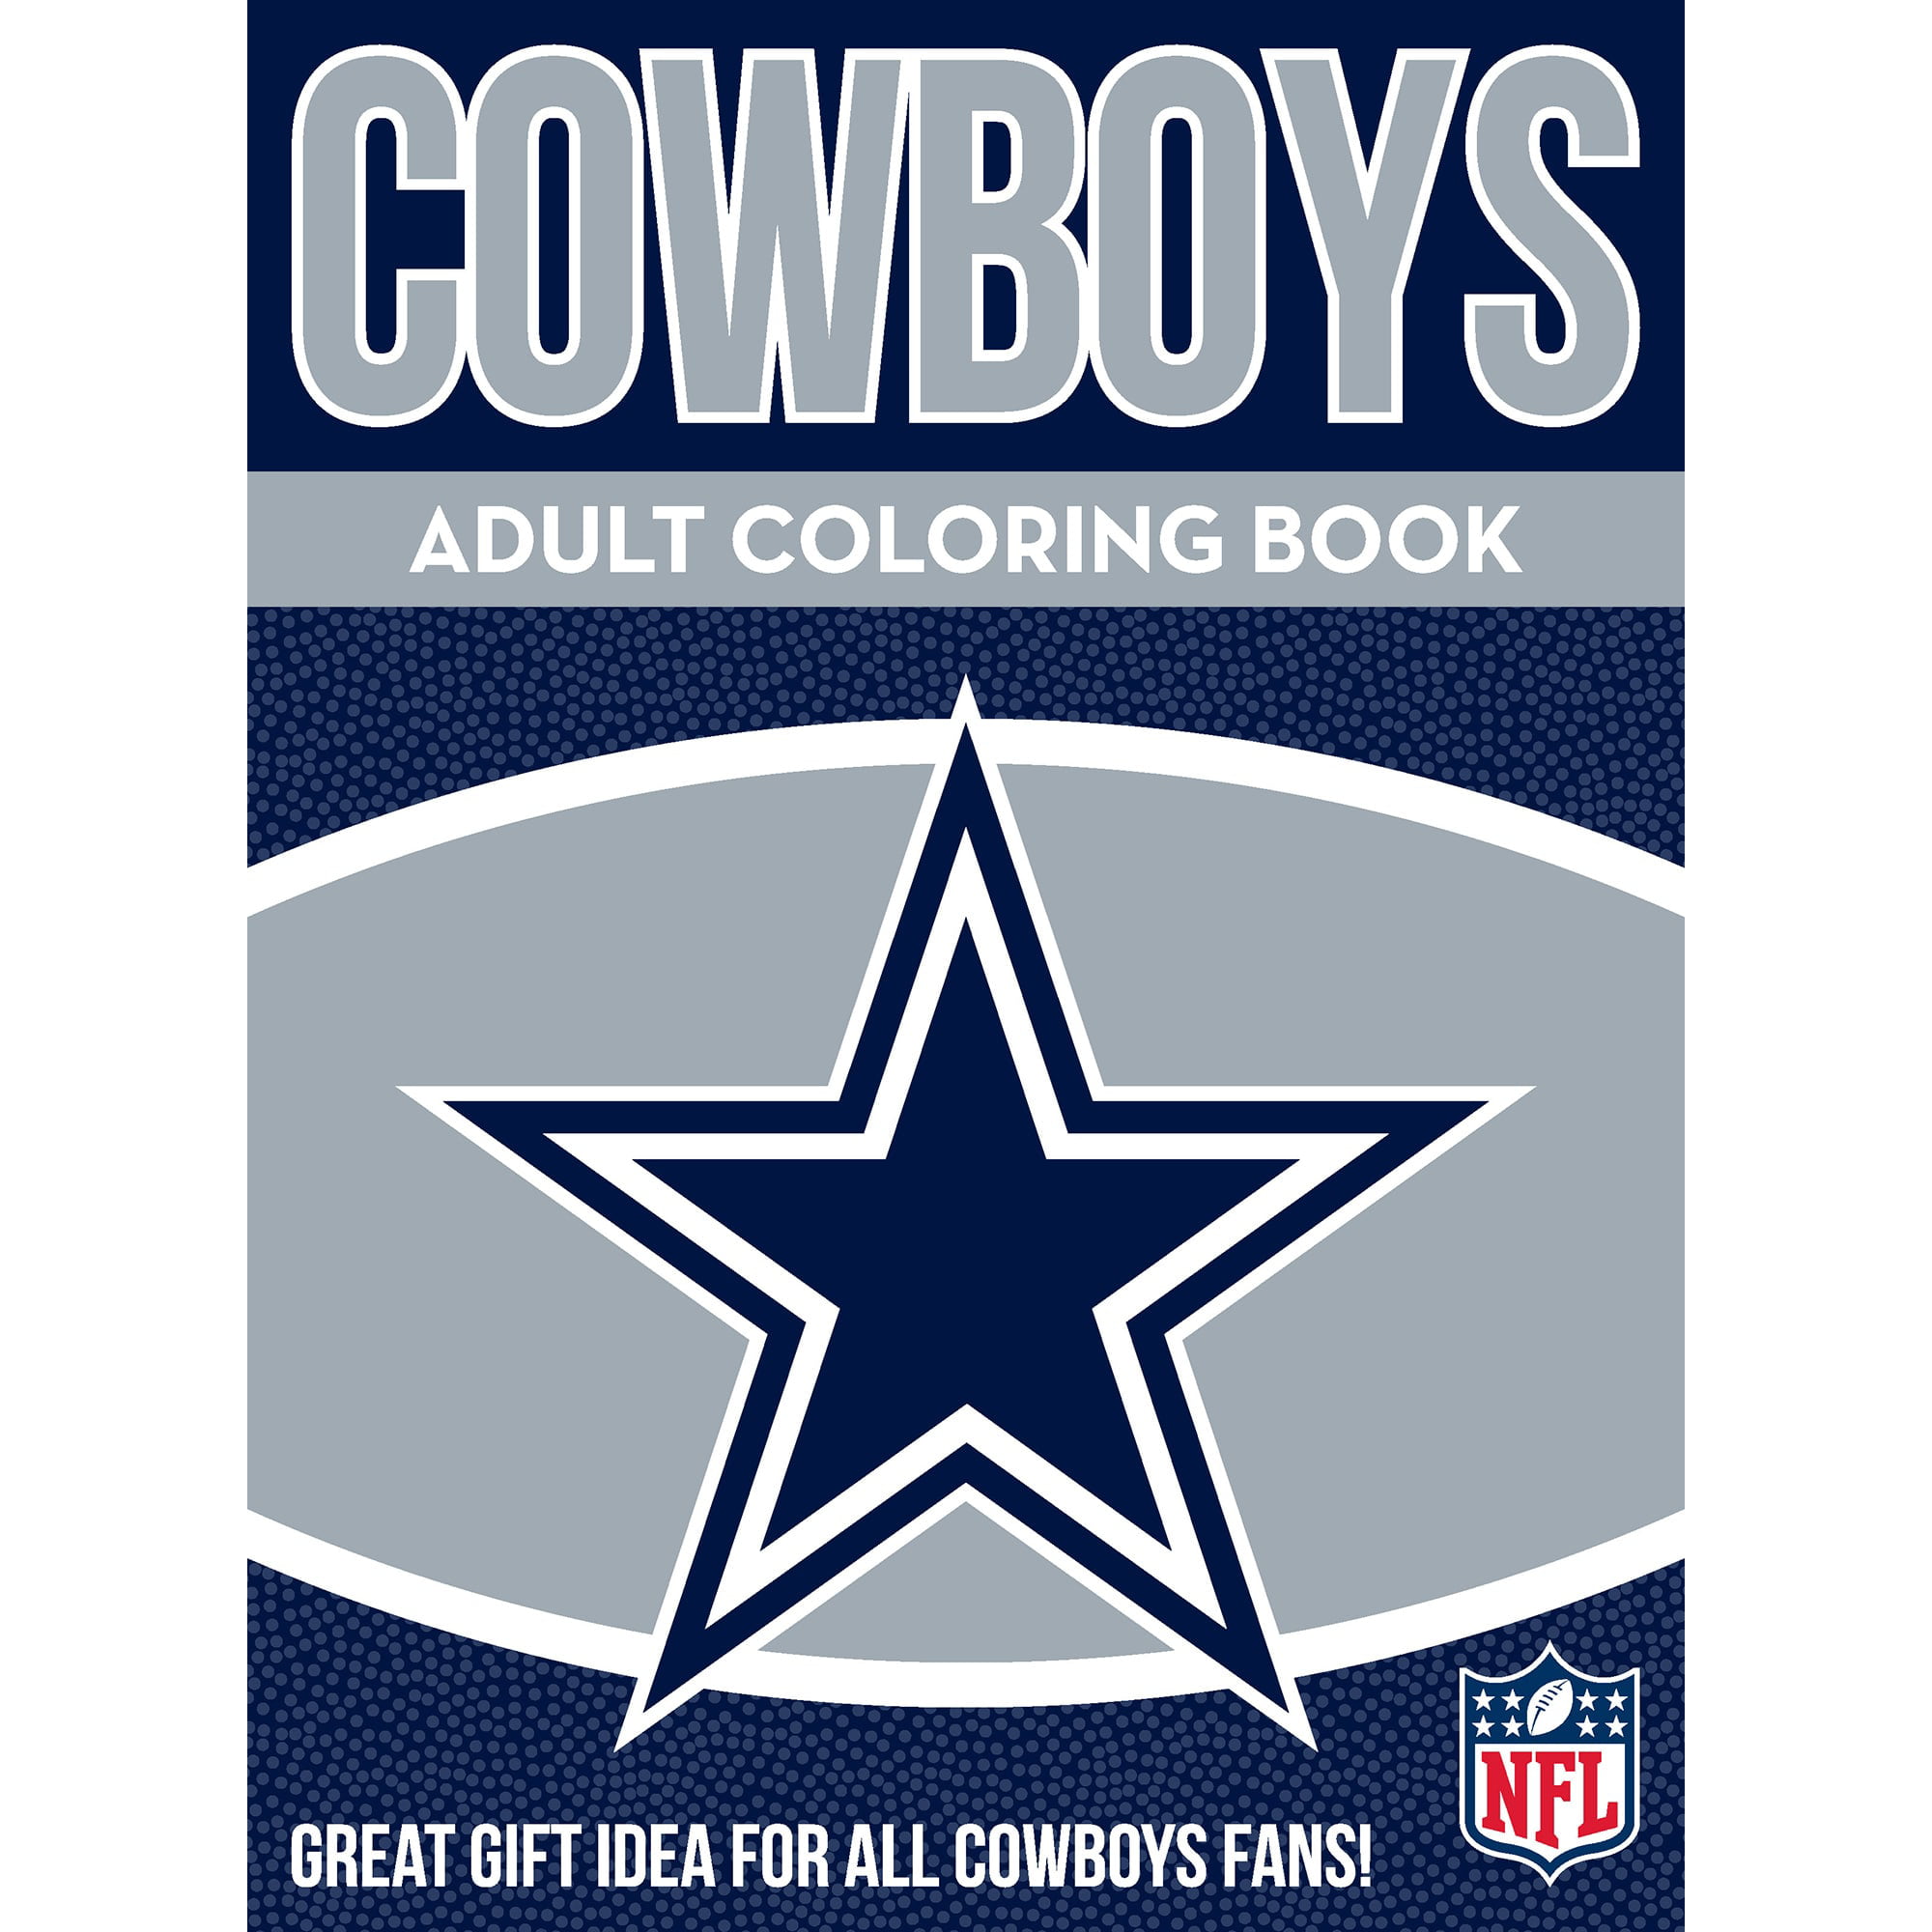 Dallas Cowboys SVG Bundle